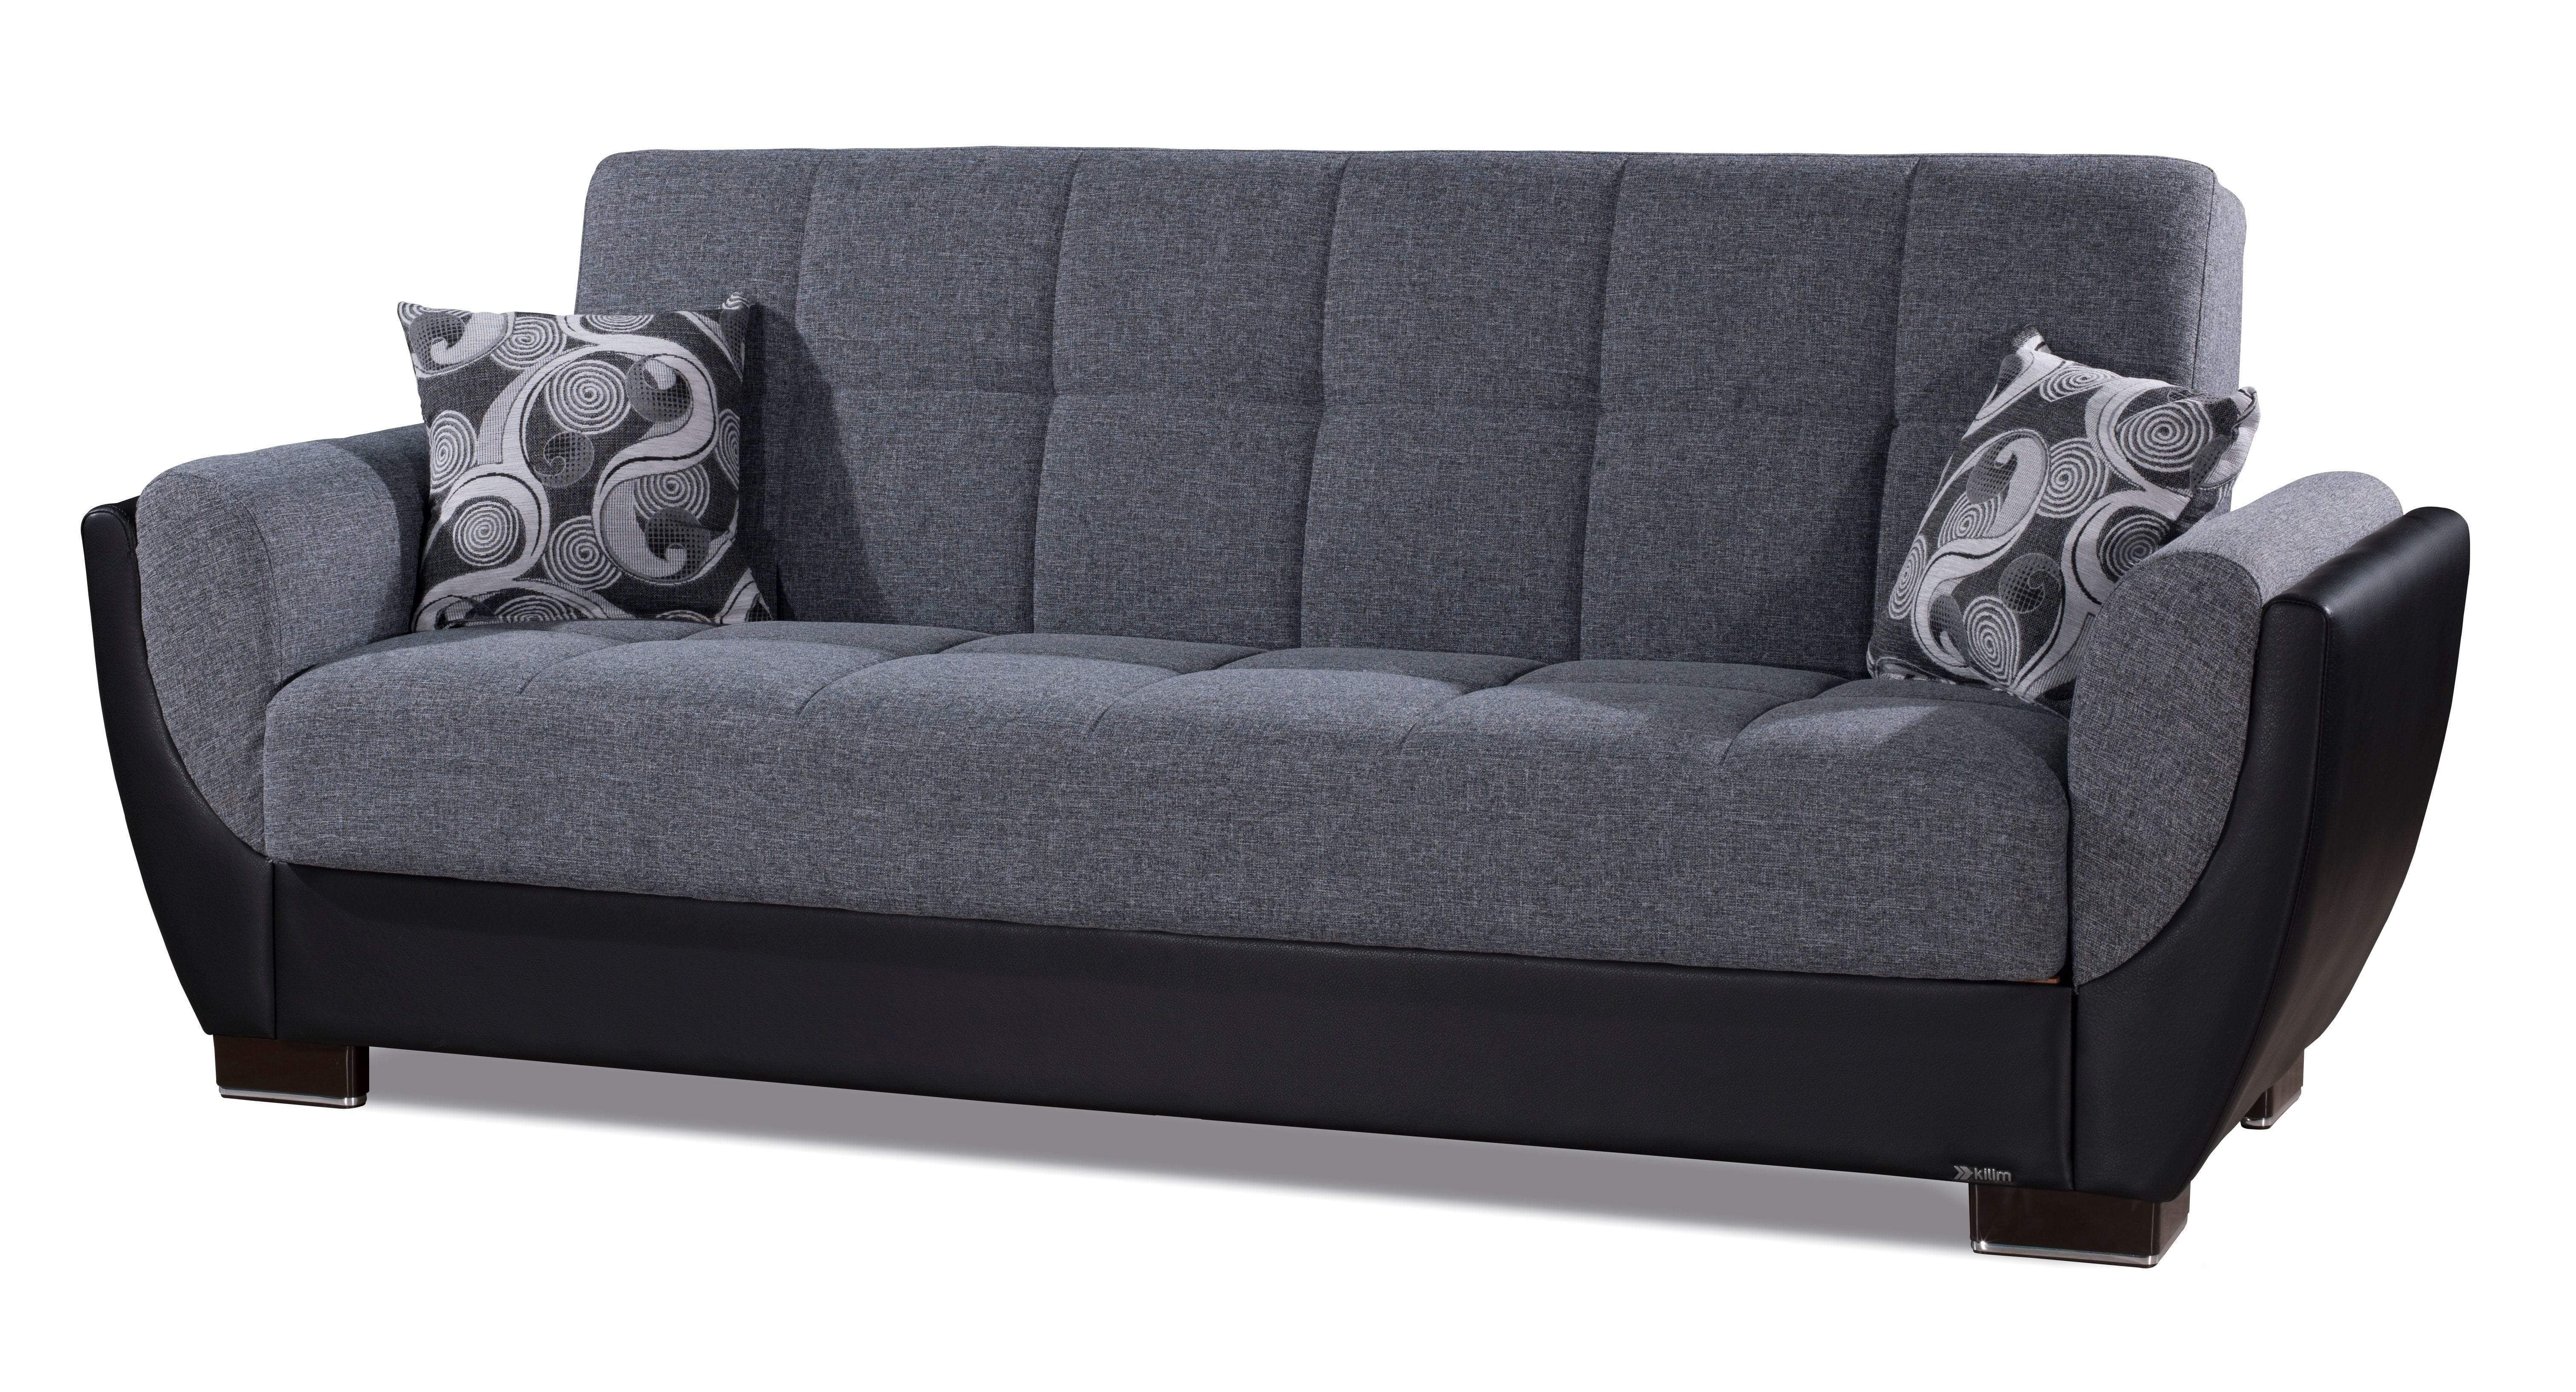 firm sofa bed mattress ubder 165